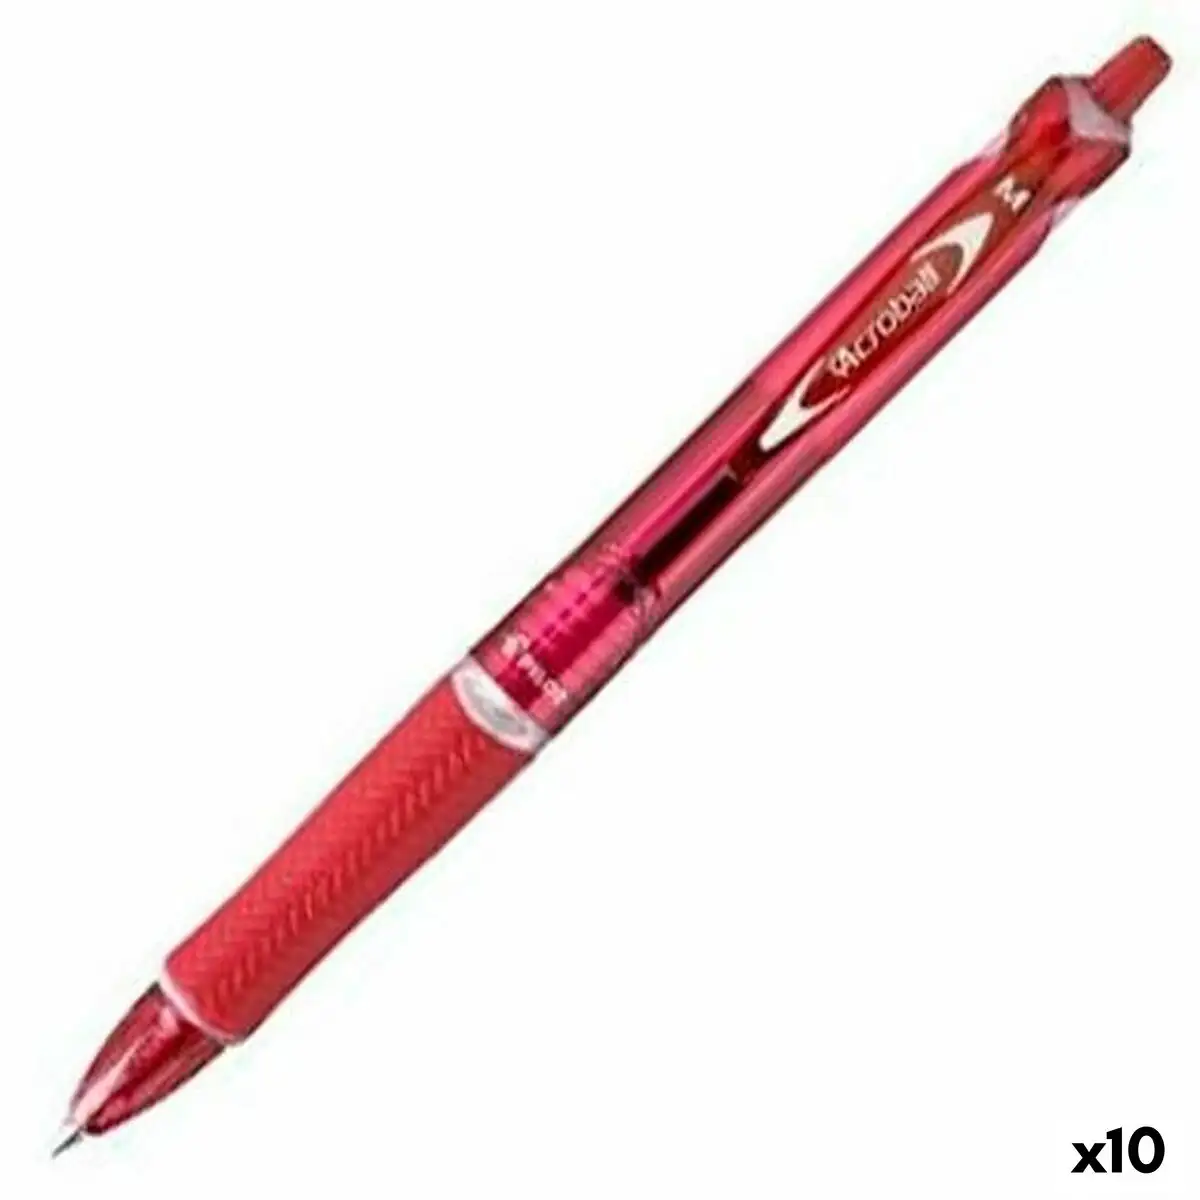 Crayon pilot acroball rouge 0 4 mm 10 unites _1831. DIAYTAR SENEGAL - Votre Source de Trouvailles uniques. Naviguez à travers notre catalogue et trouvez des articles qui vous distinguent et reflètent votre unicité.